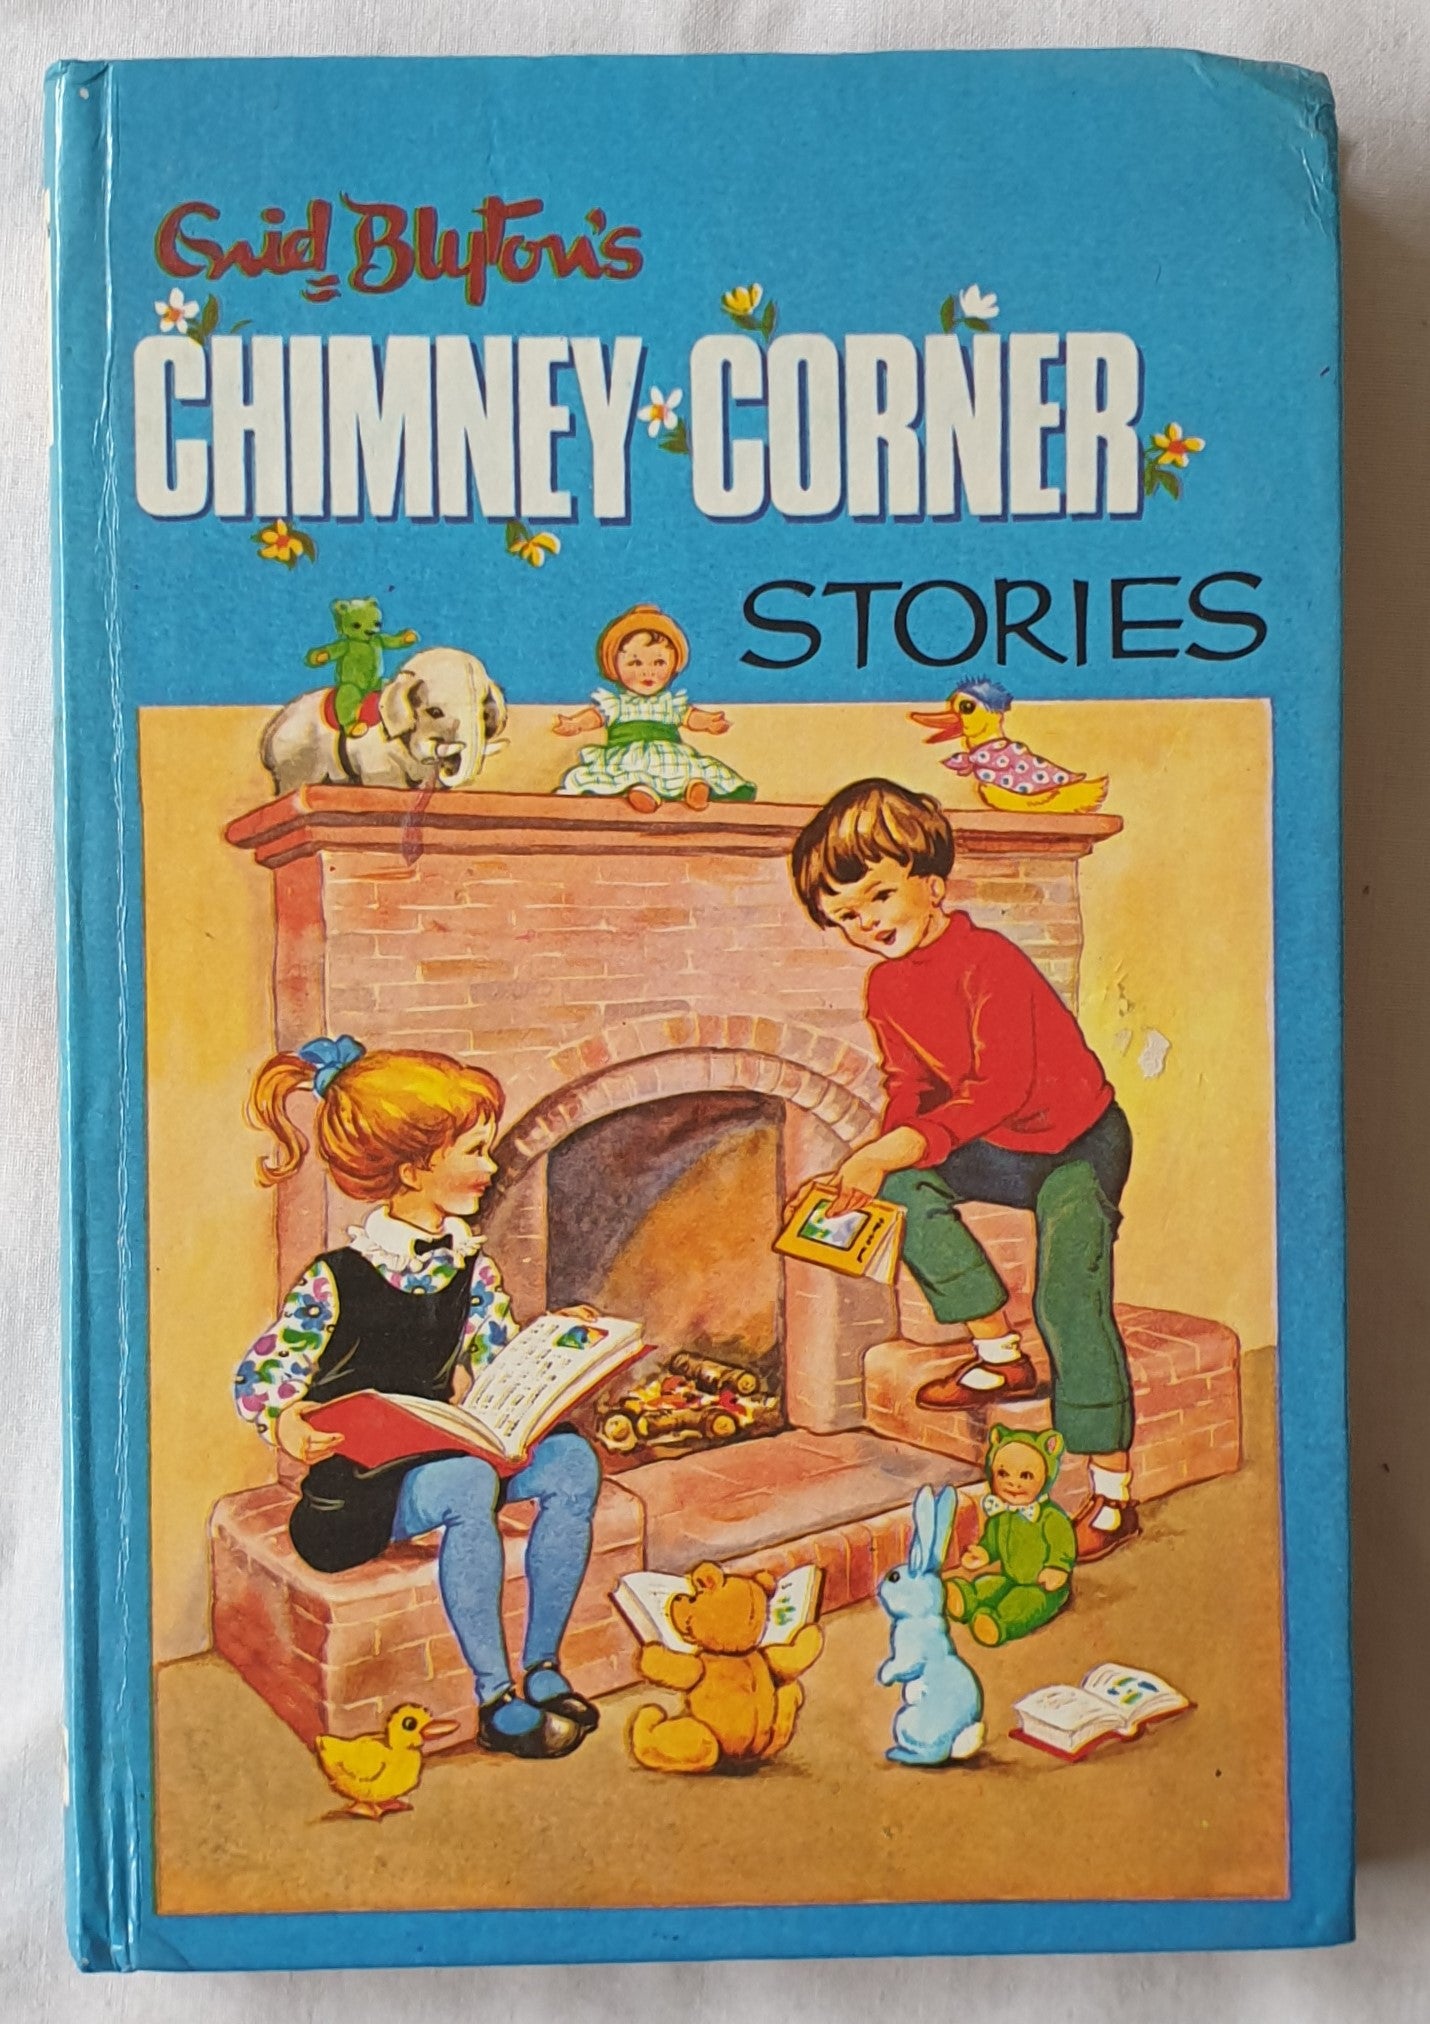 Chimney Corner Stories by Enid Blyton